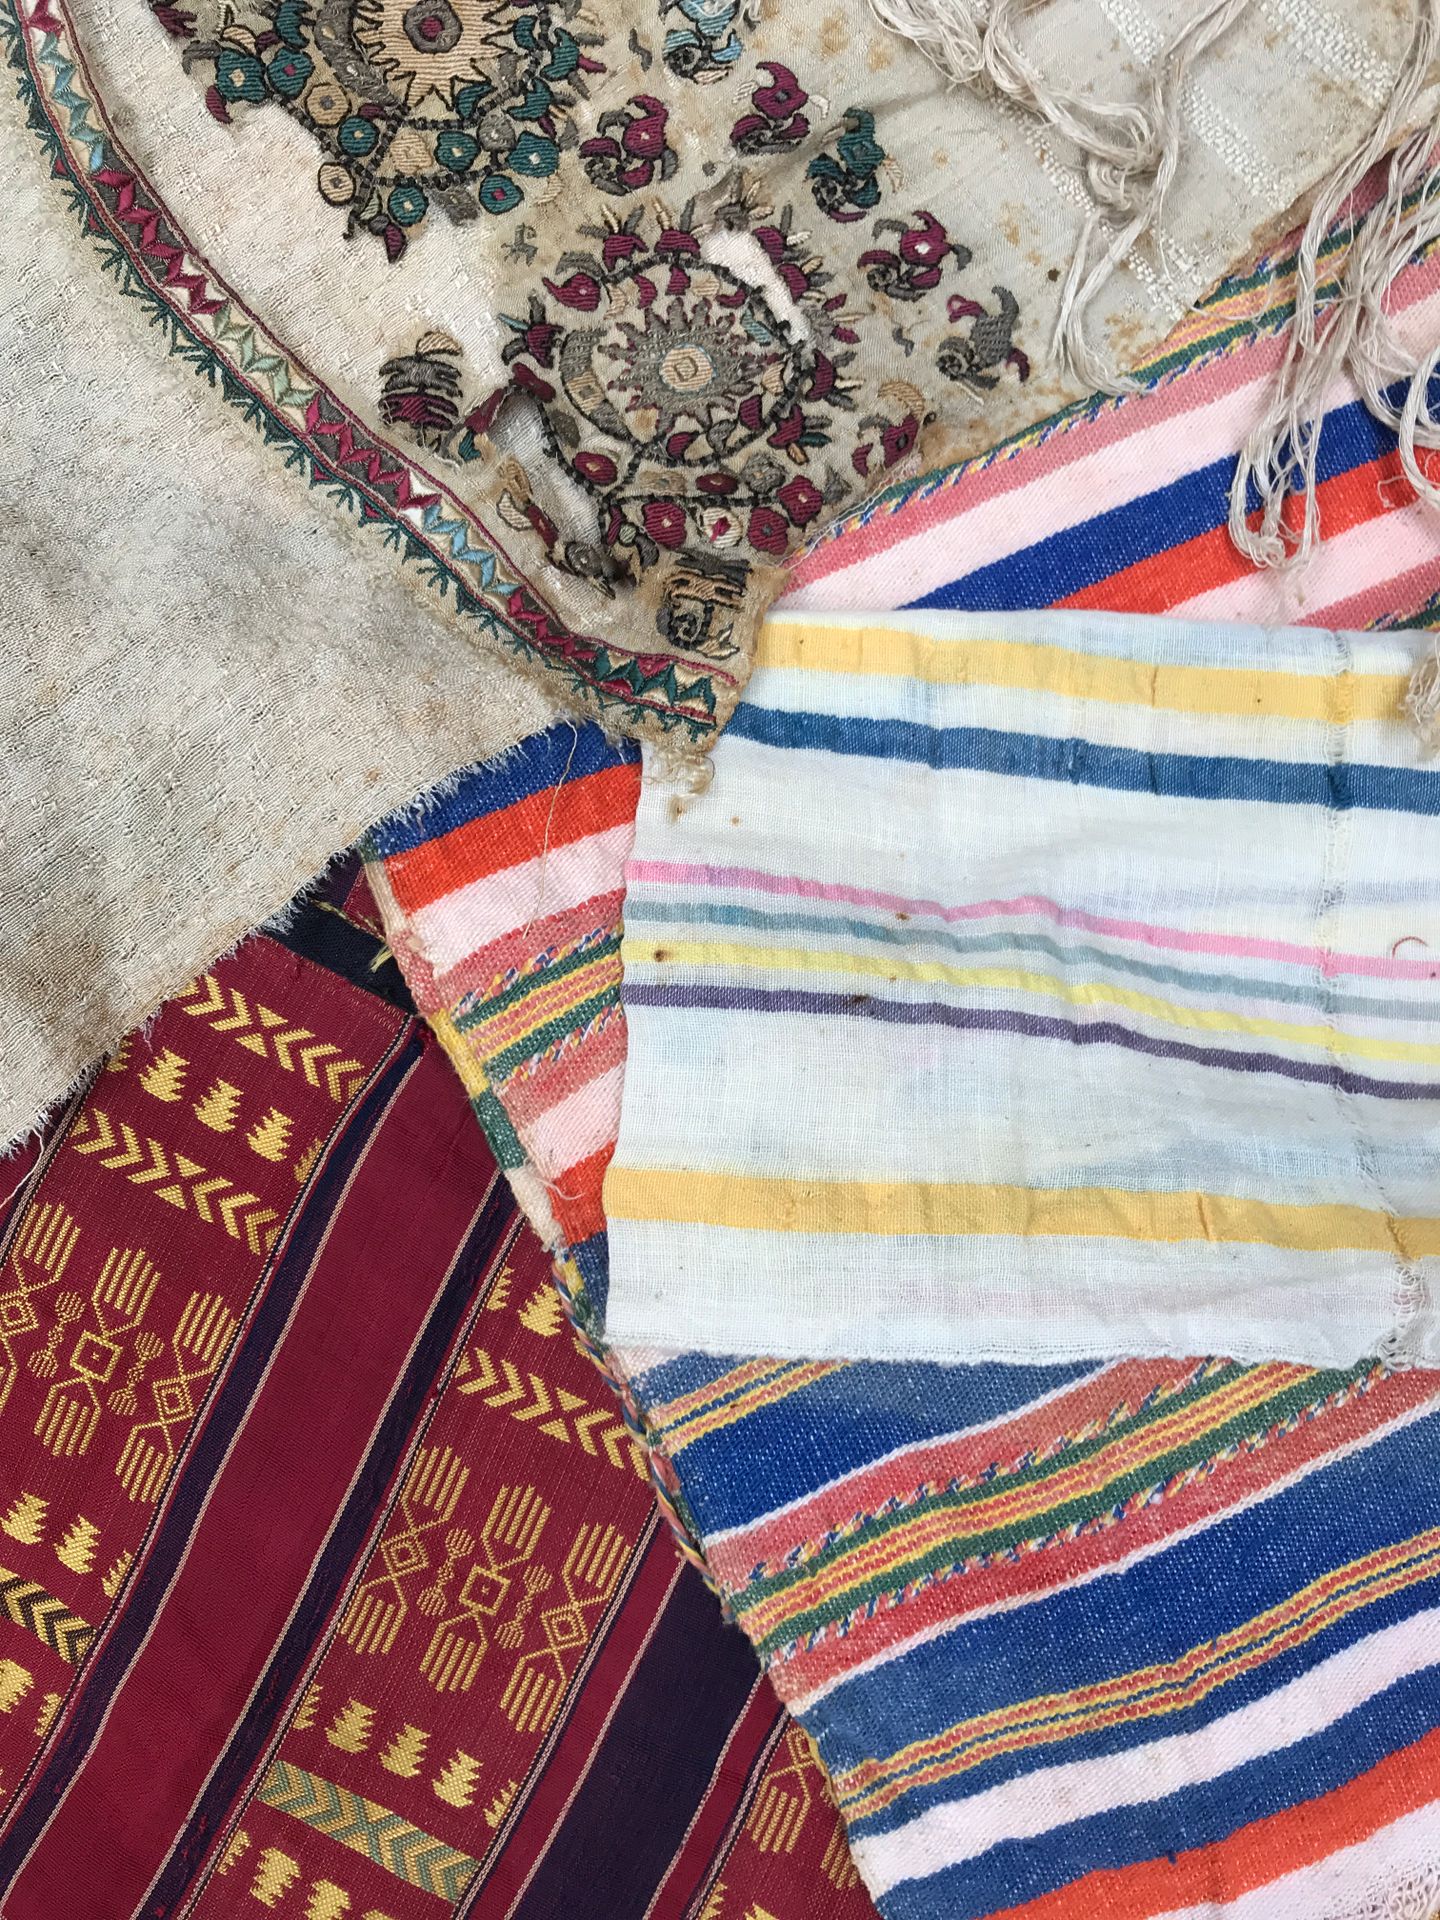 Fragments de textiles orientaux incluye 7 piezas de diferentes tipos y colores

&hellip;